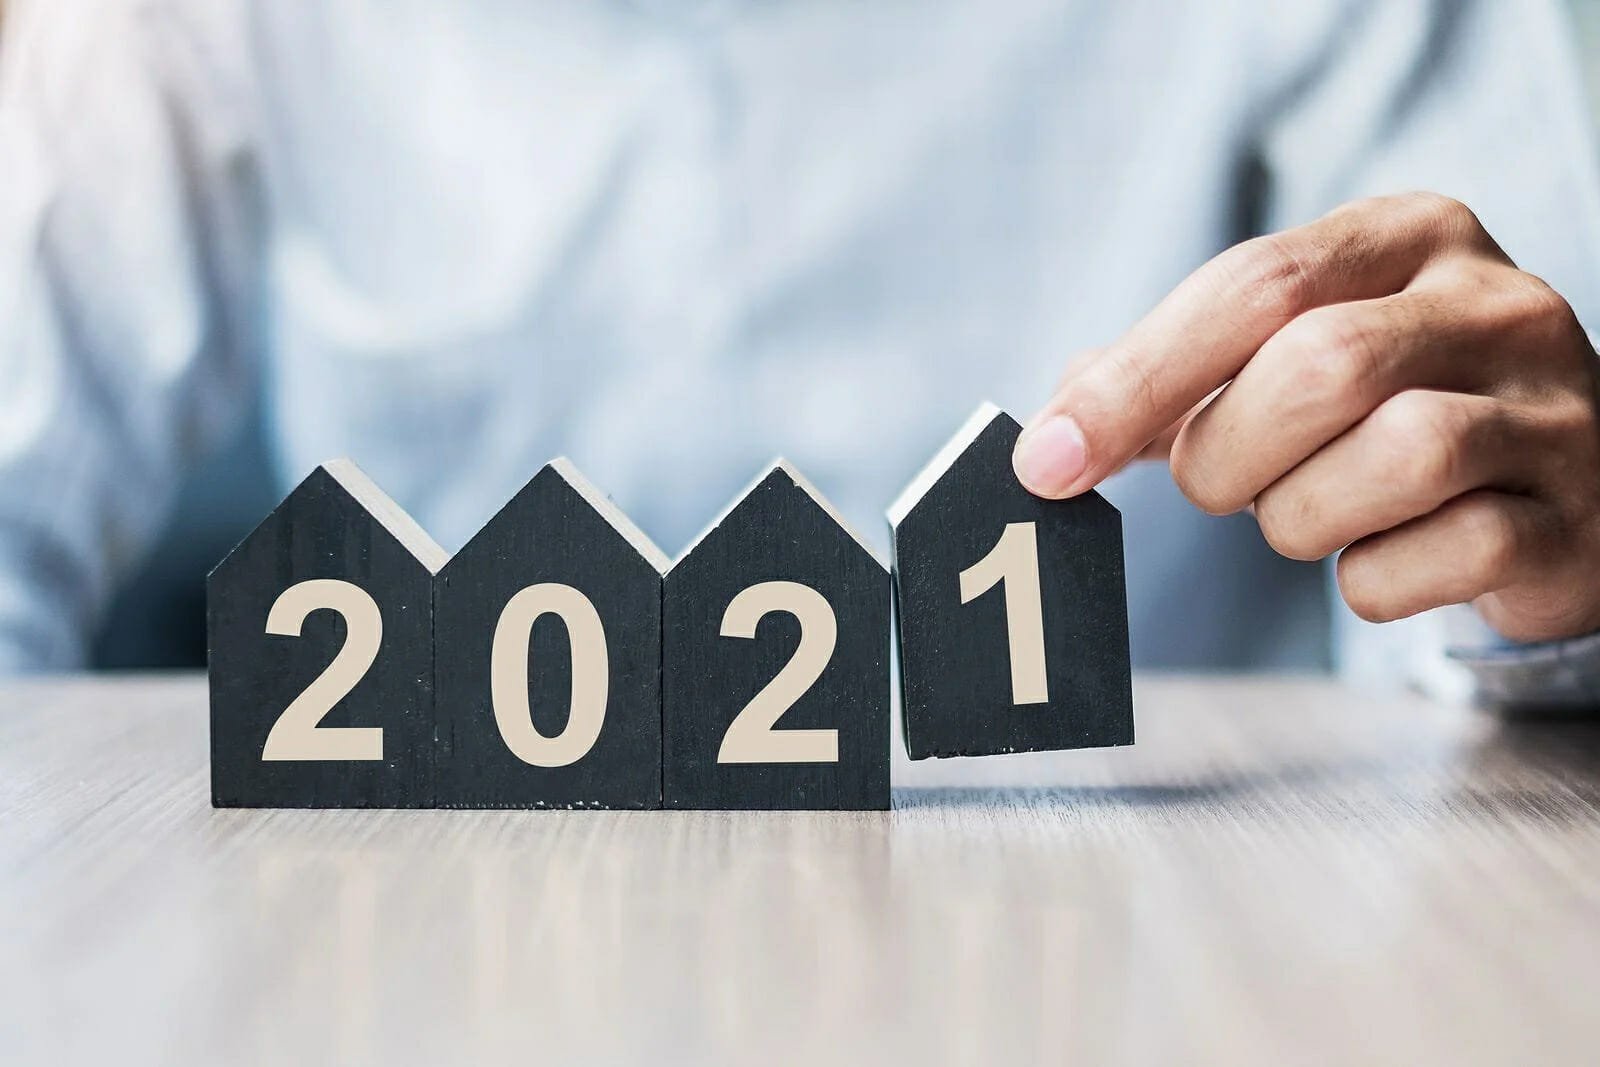 2022 Housing Market Forecast For Single Family Homes